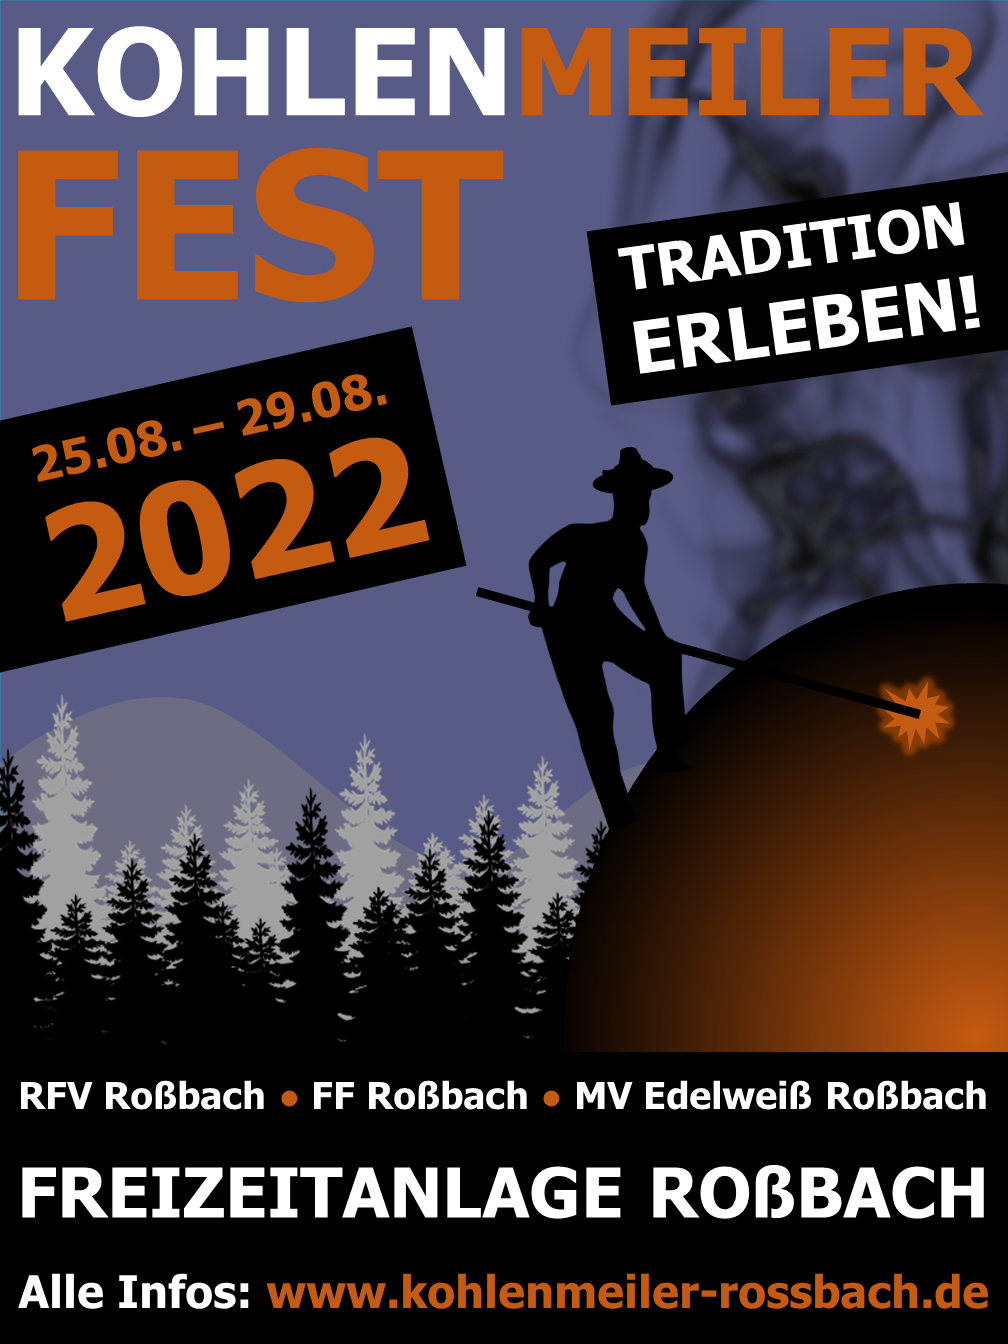 RFV - Kohlenmeiler Fest